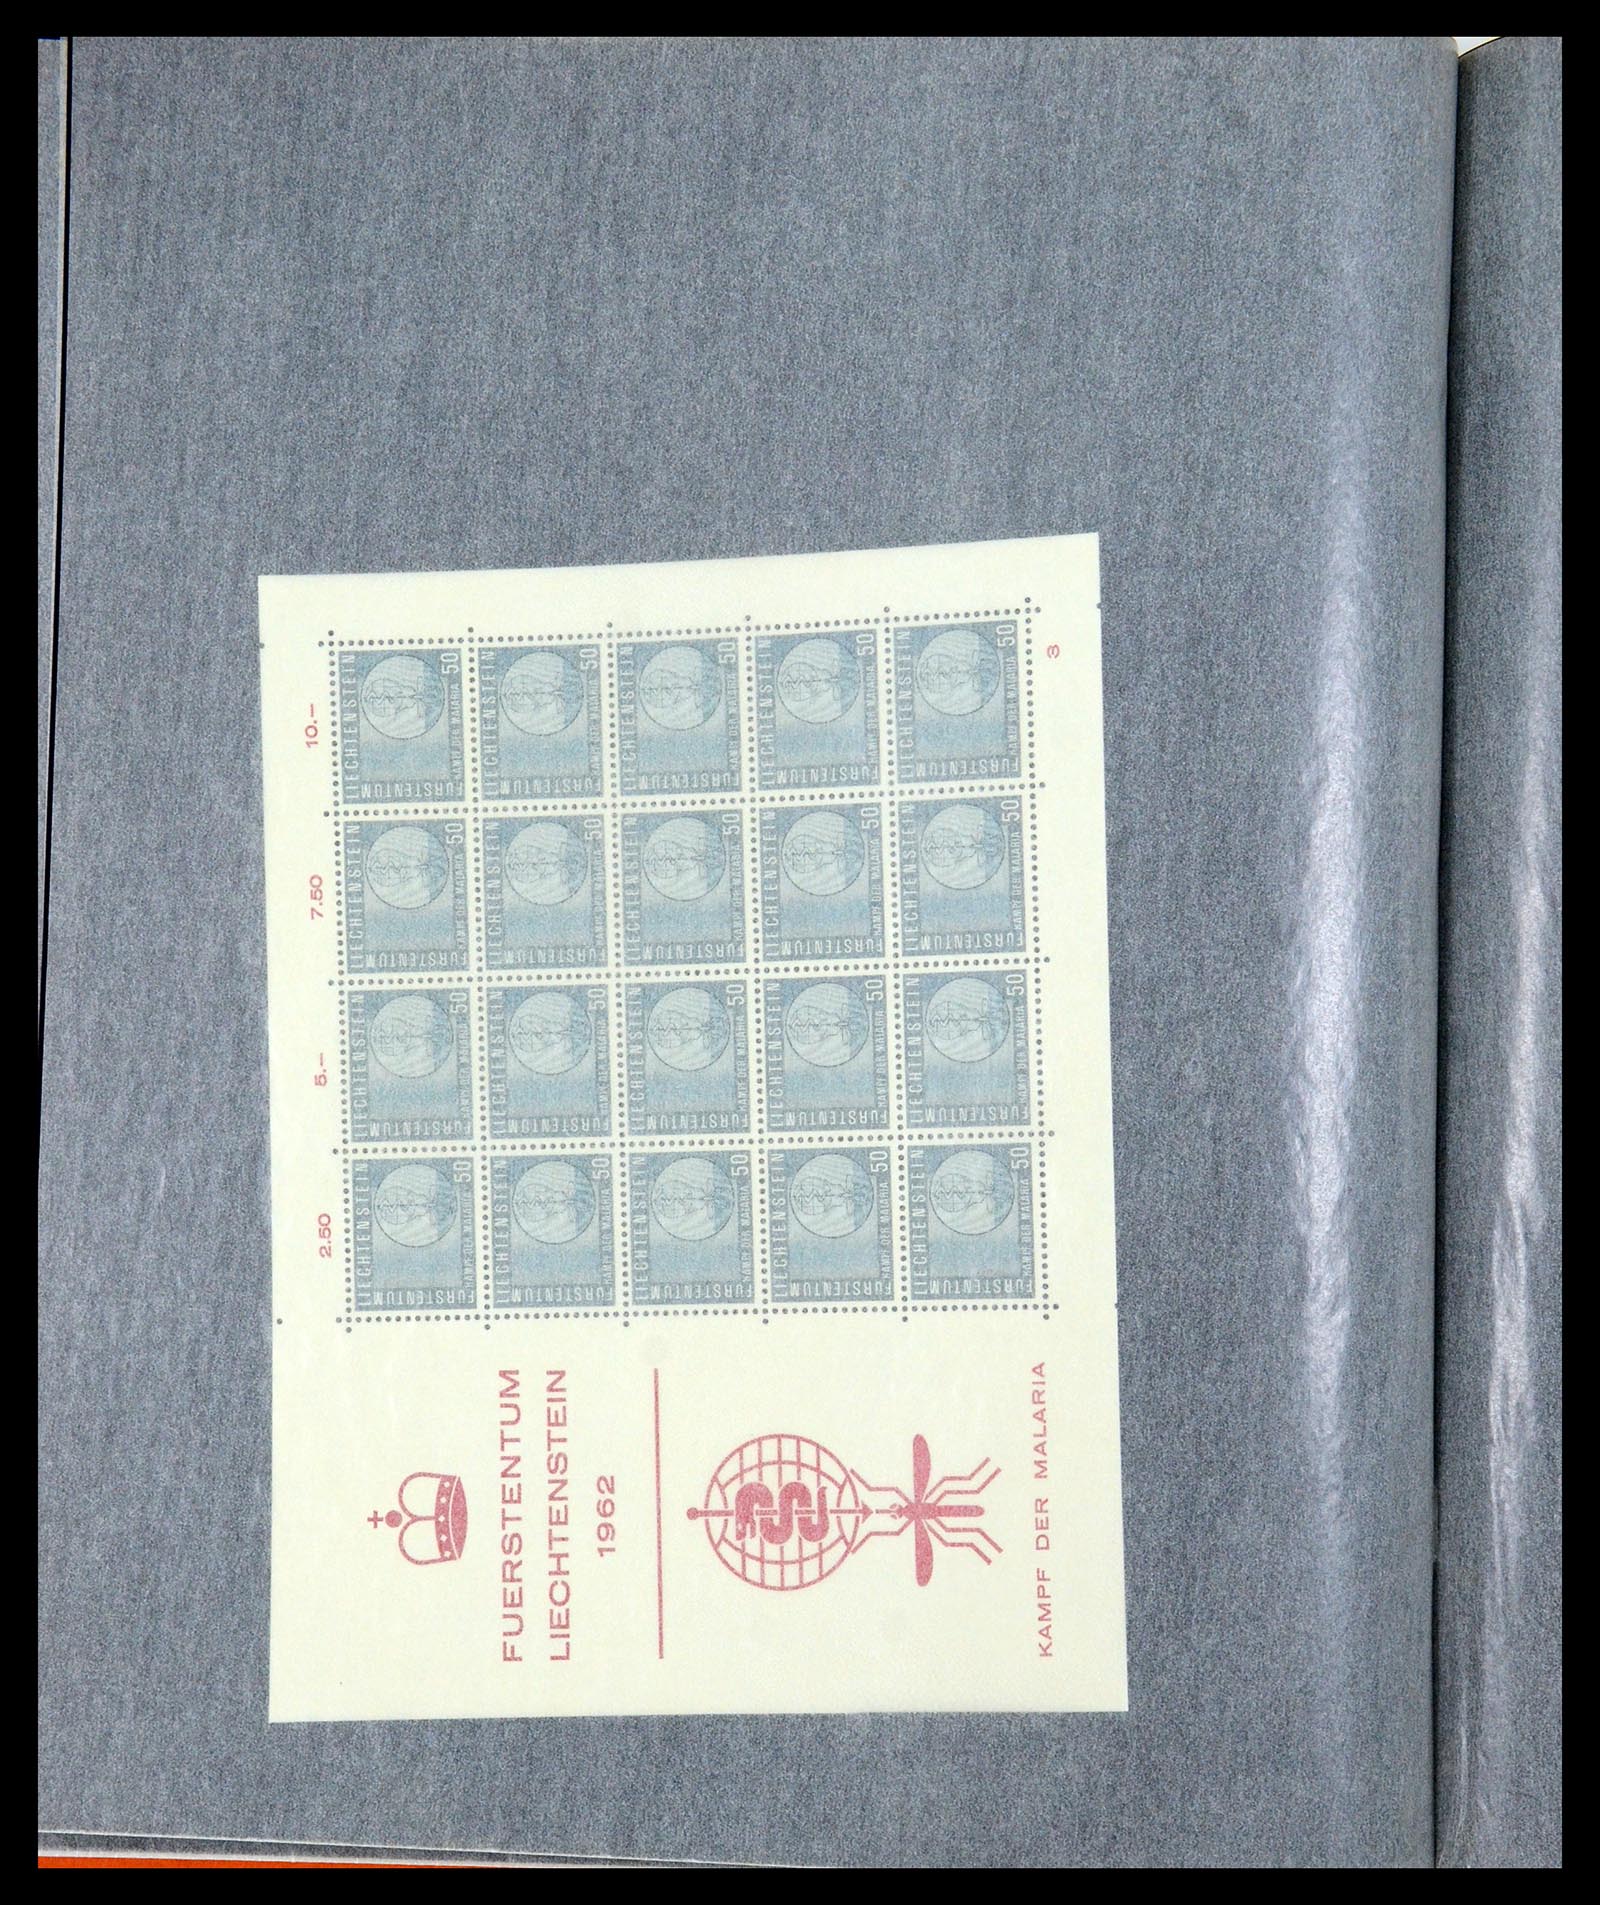 36280 201 - Stamp collection 36280 Liechtenstein souvenir sheets and sheetlets 1934-